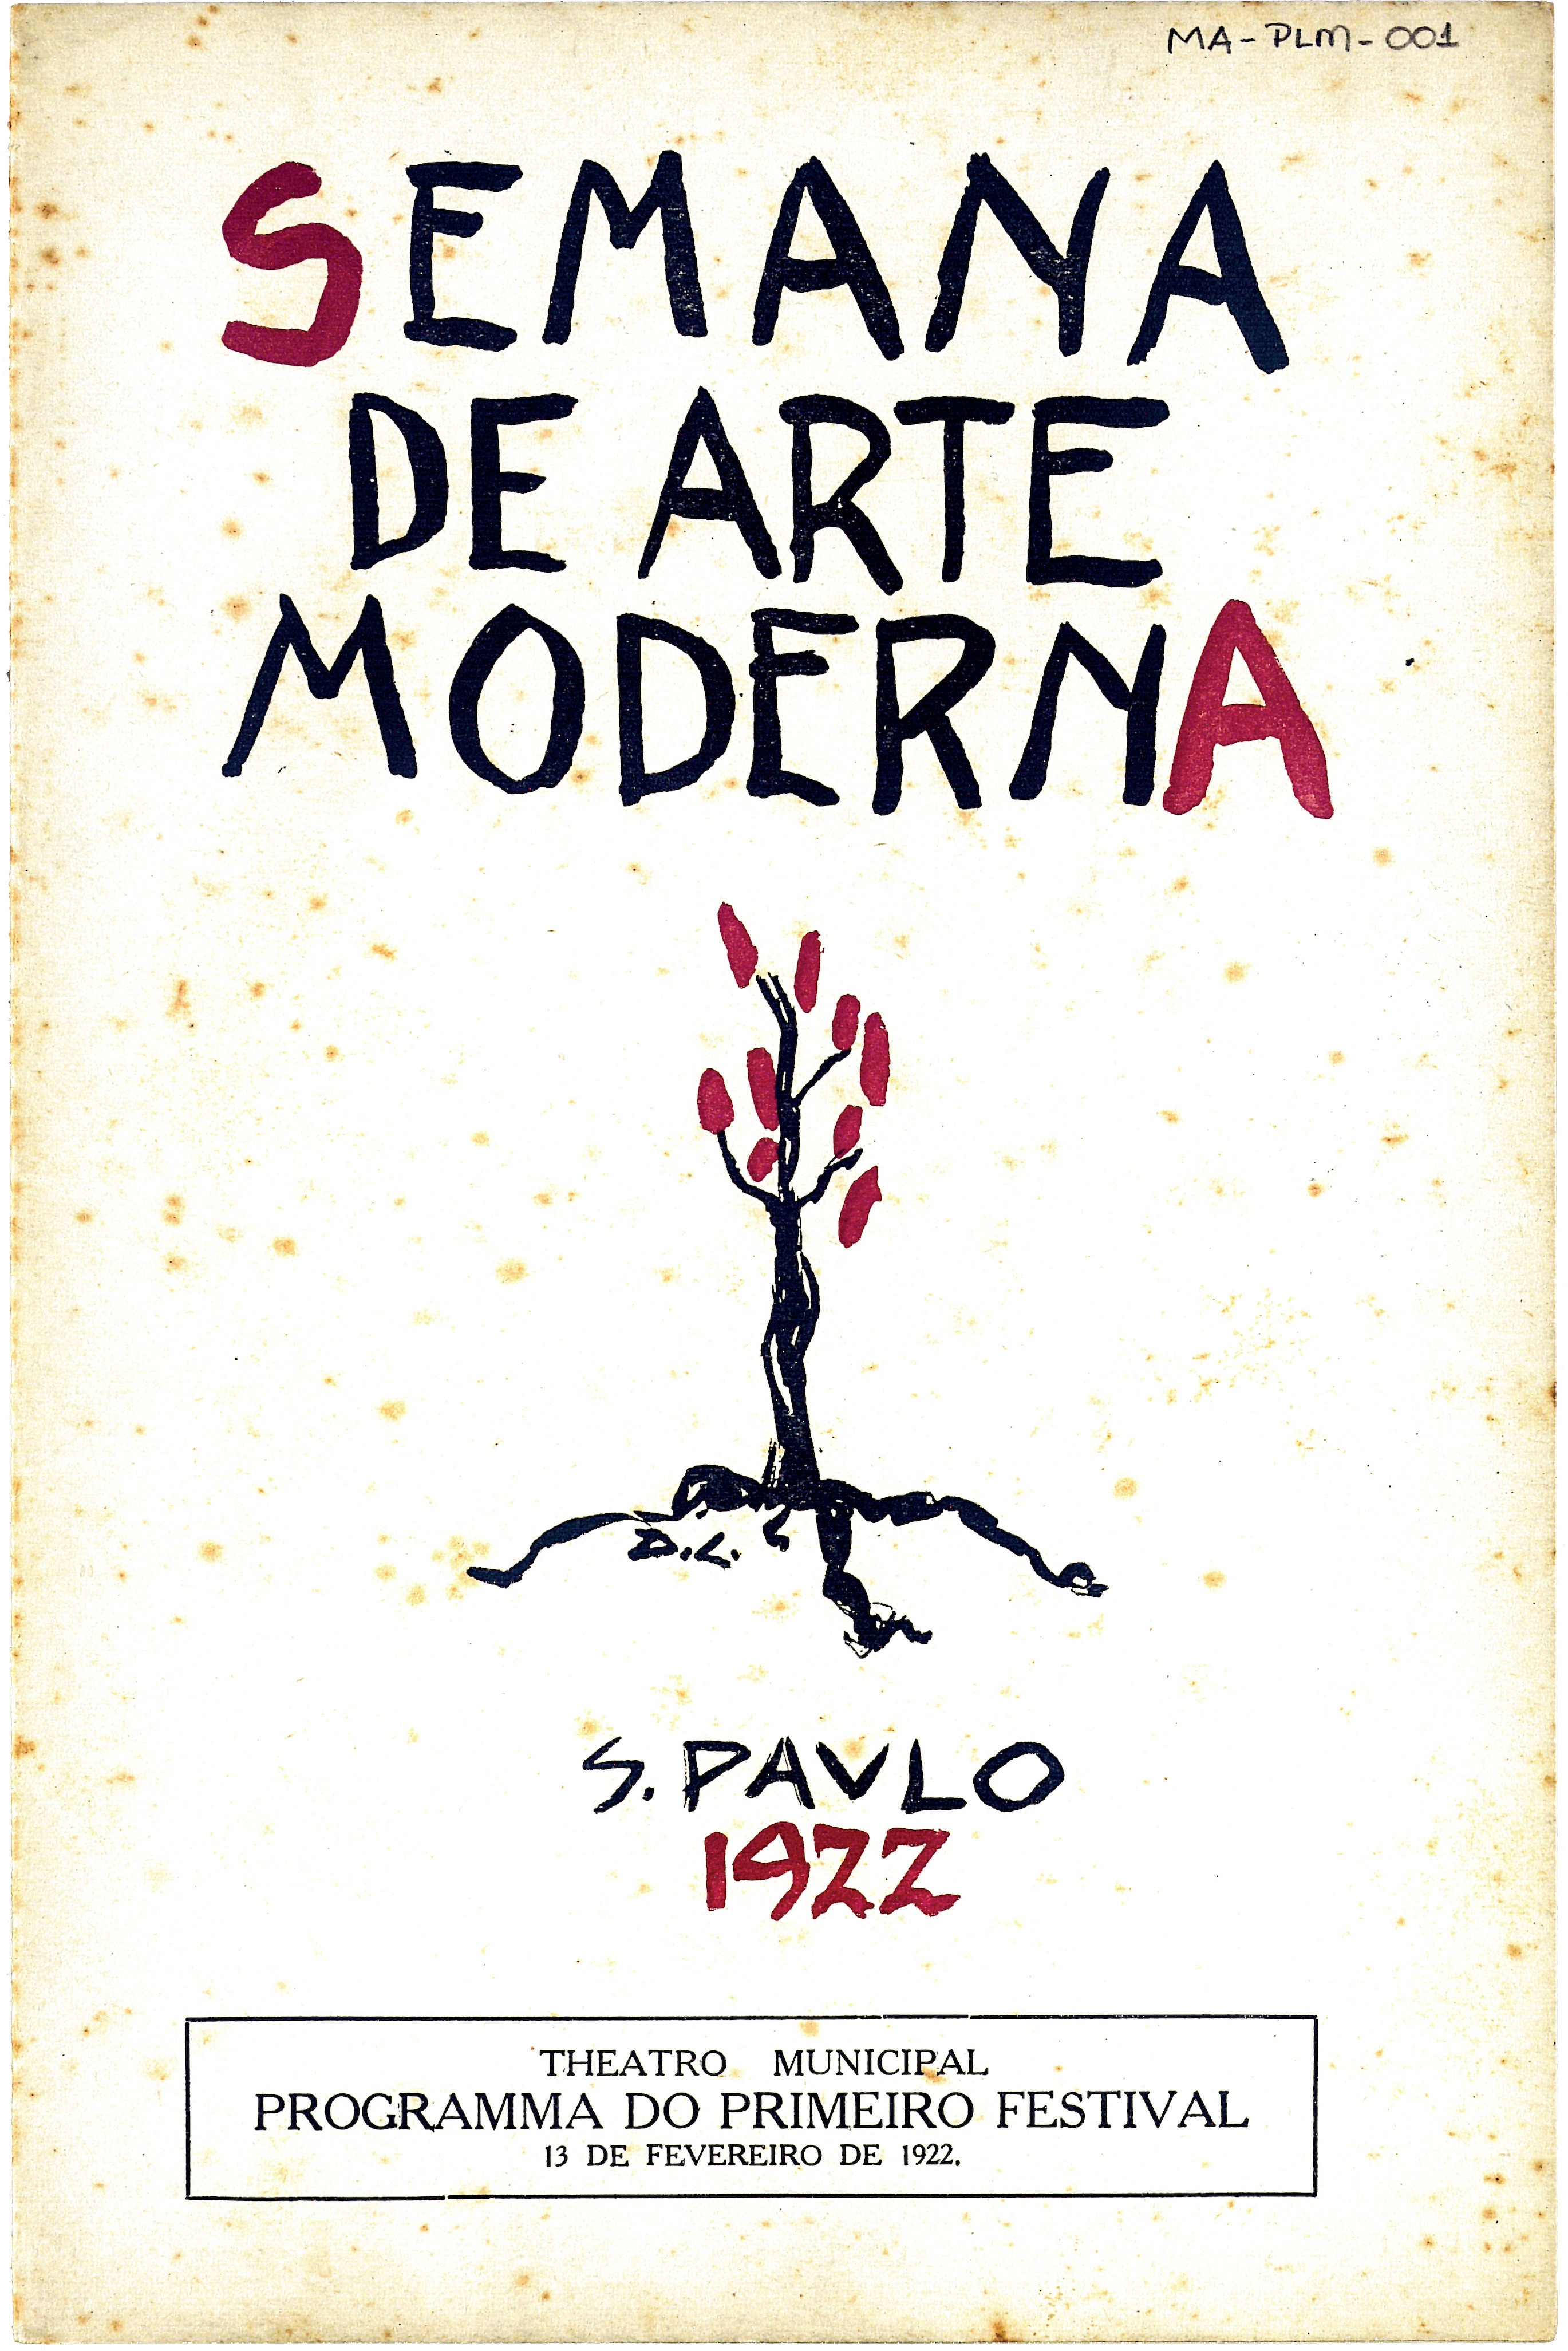 Эмилиану Ди Кавалканти. Обложка программы Недели современного искусства. 1922.